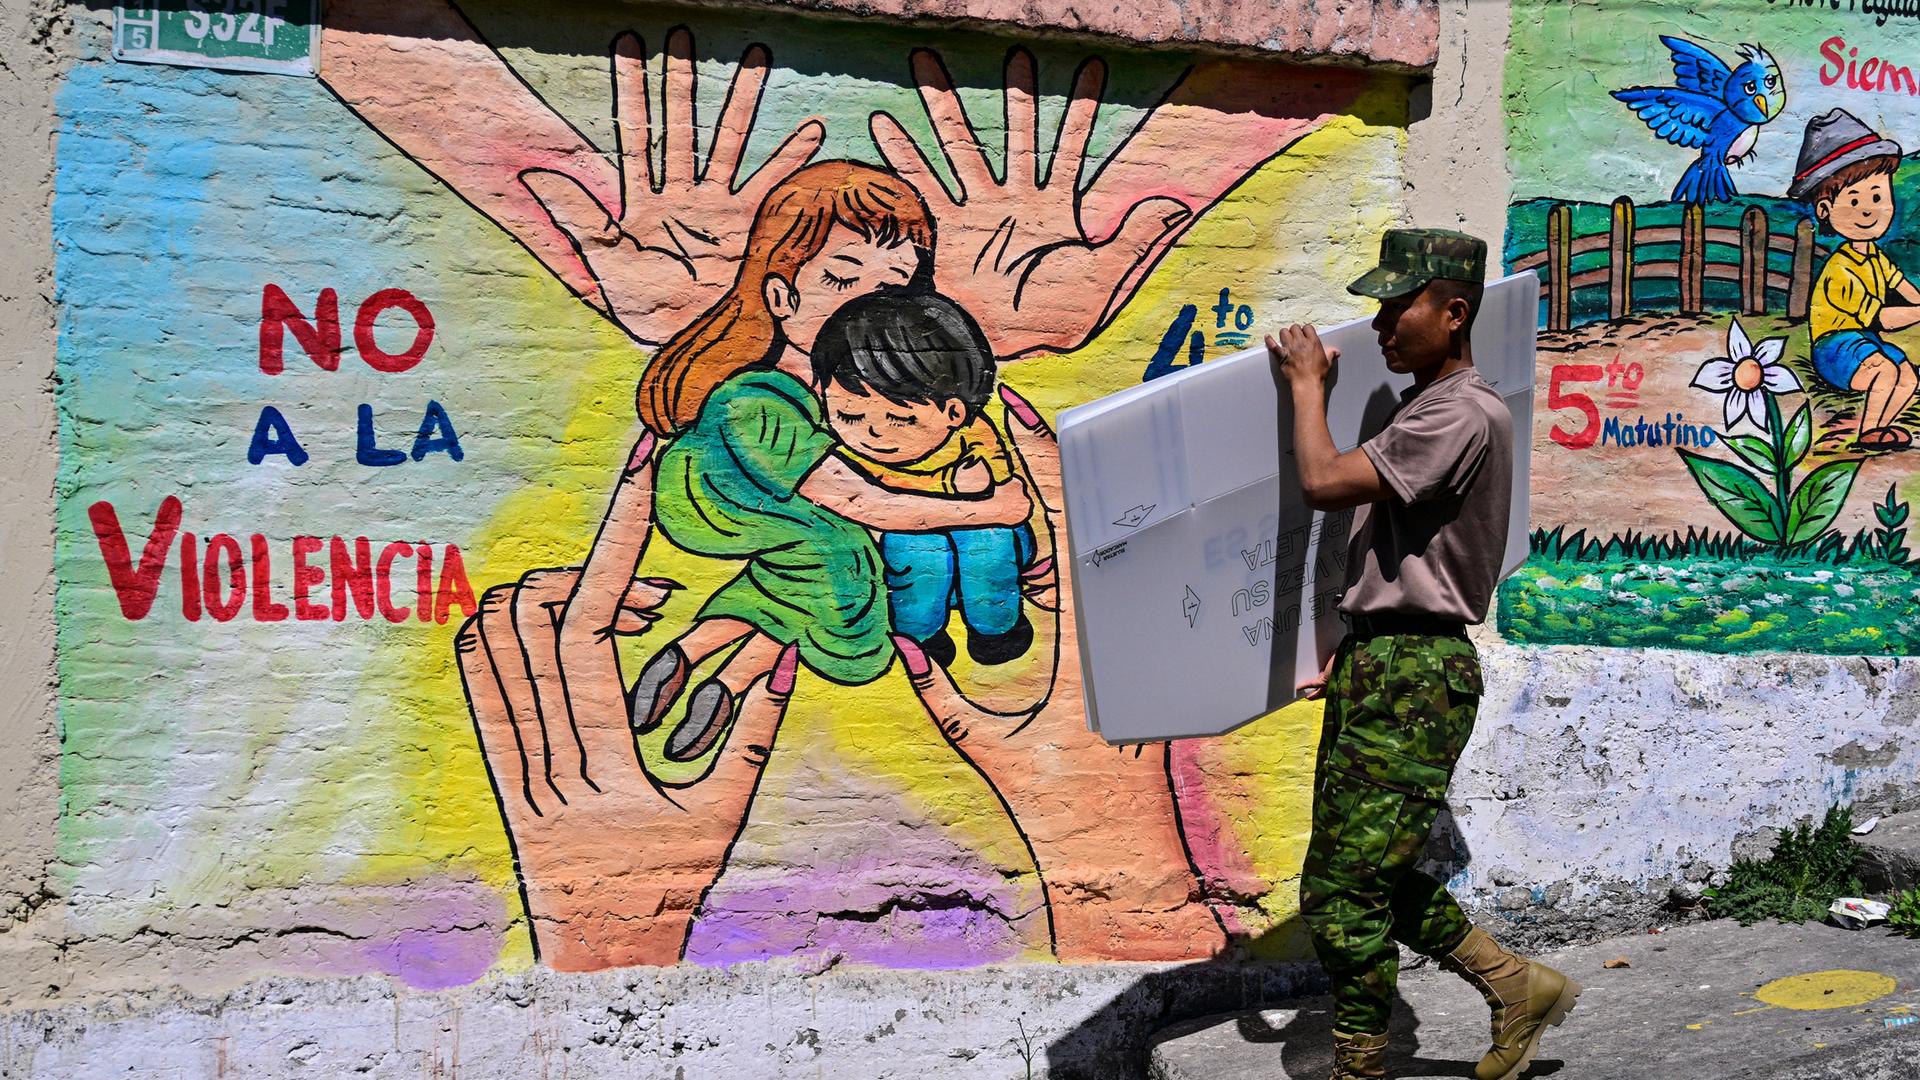 Ein Militärangehöriger in Ecuador transportiert in der Hauptstadt Quito Material für die Präsidentschaftswahl. Auf einem Graffito im Hintergrund steht "Nein zur Gewalt".